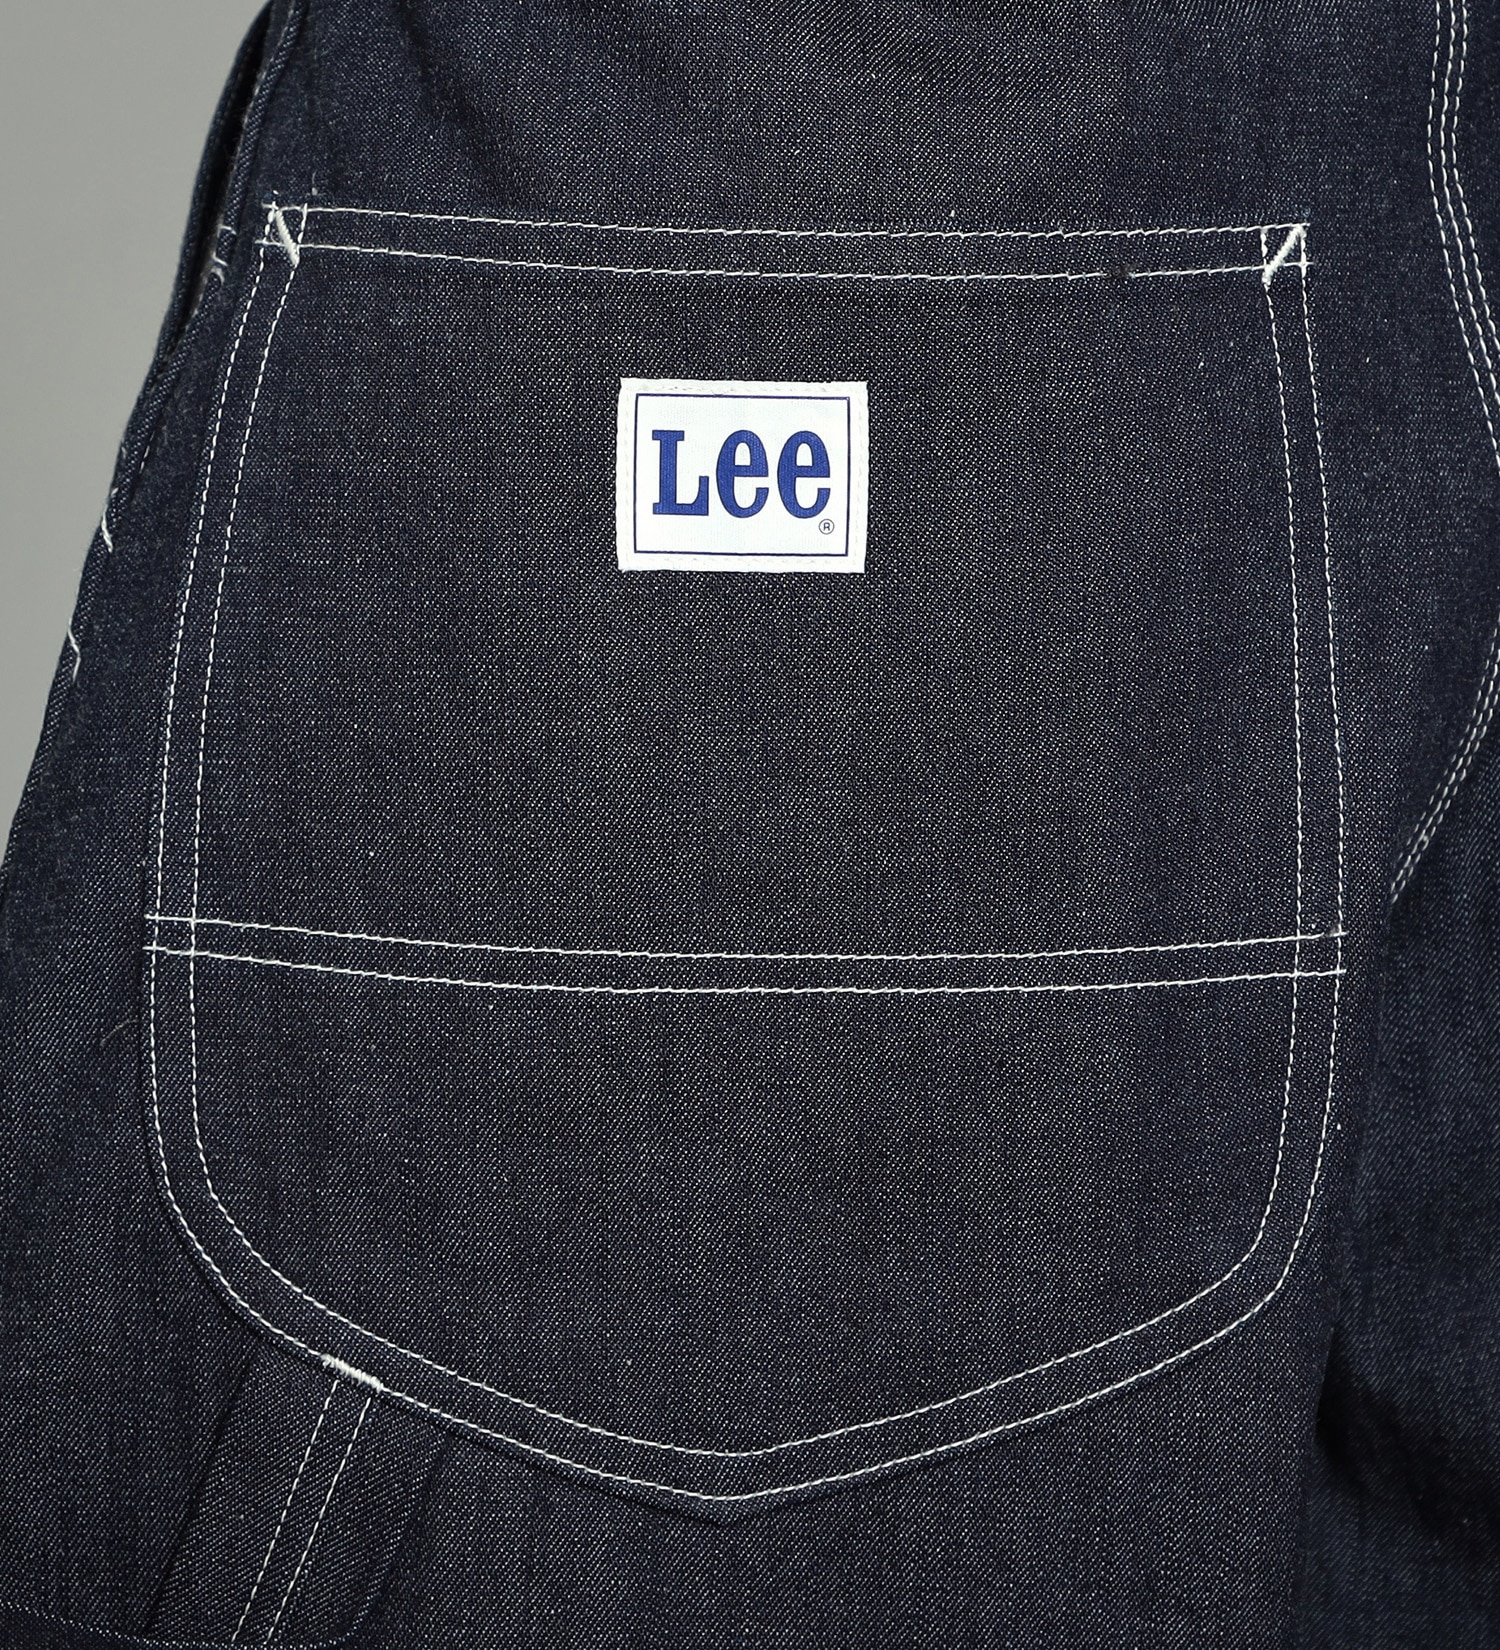 Lee(リー)のSUPERSIZED ペインターパンツ|パンツ/デニムパンツ/メンズ|インディゴ未洗い